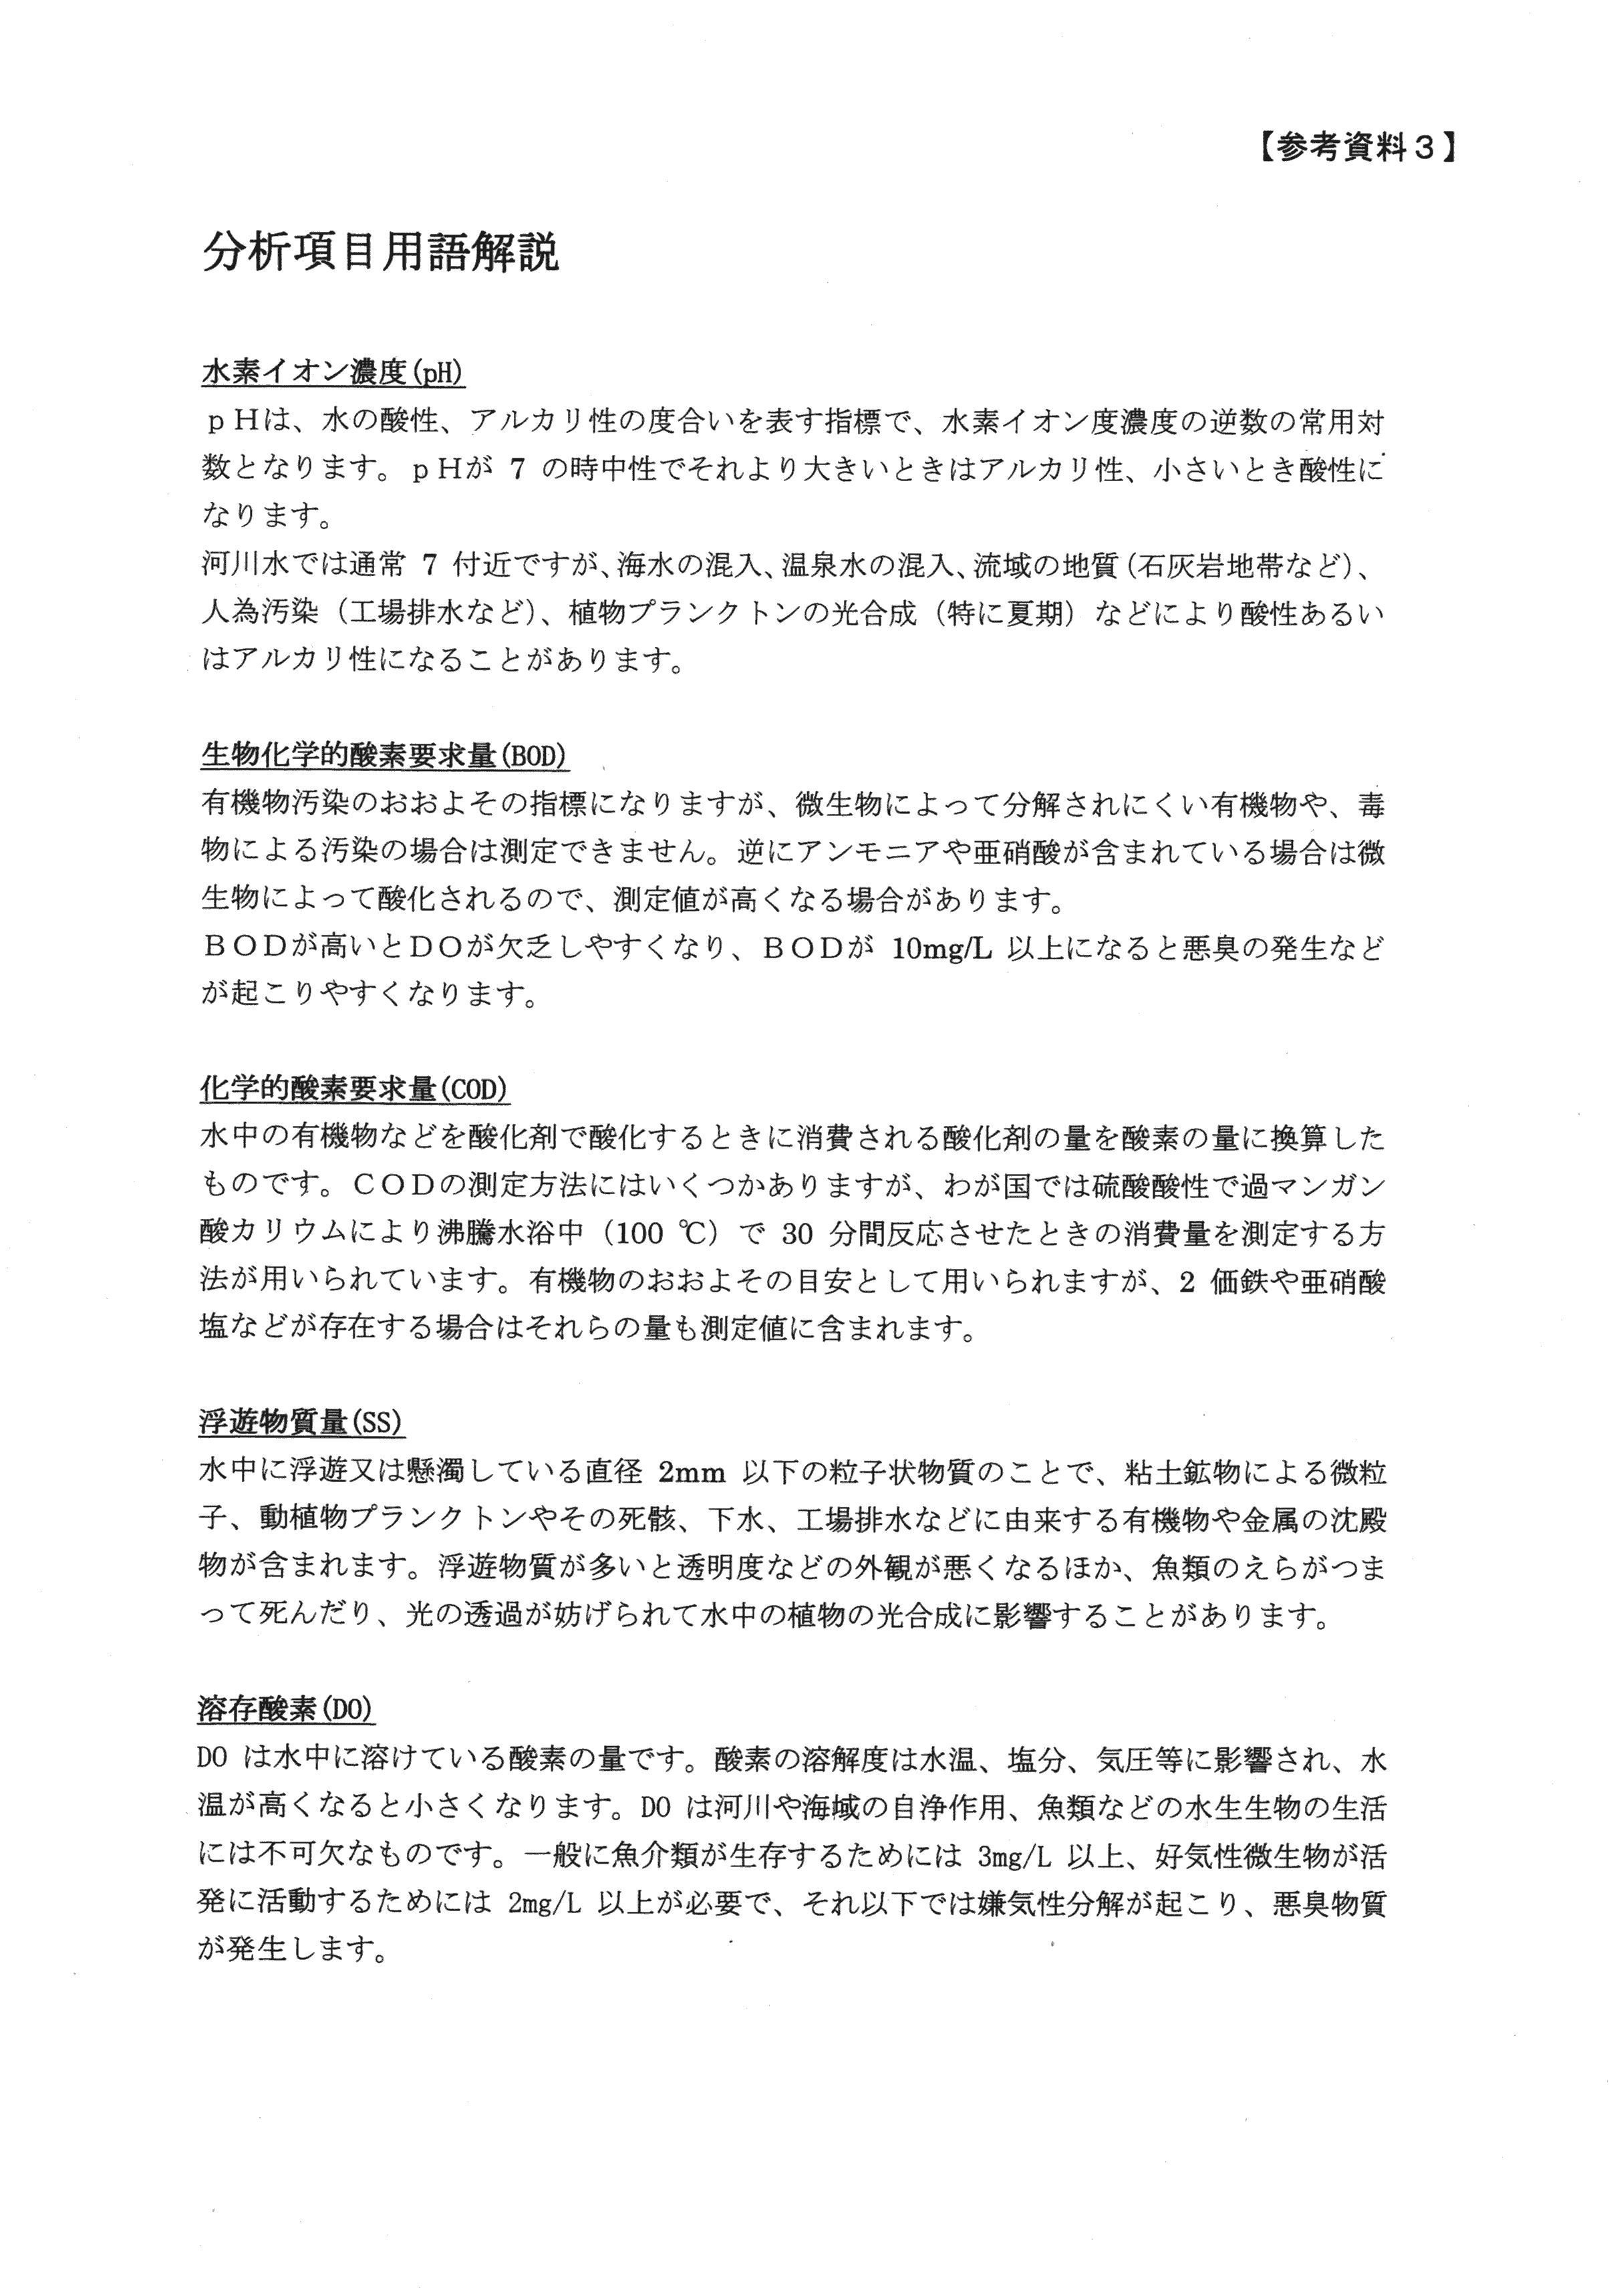 平成29年11月-赤田川水質汚濁状況調査報告書-33